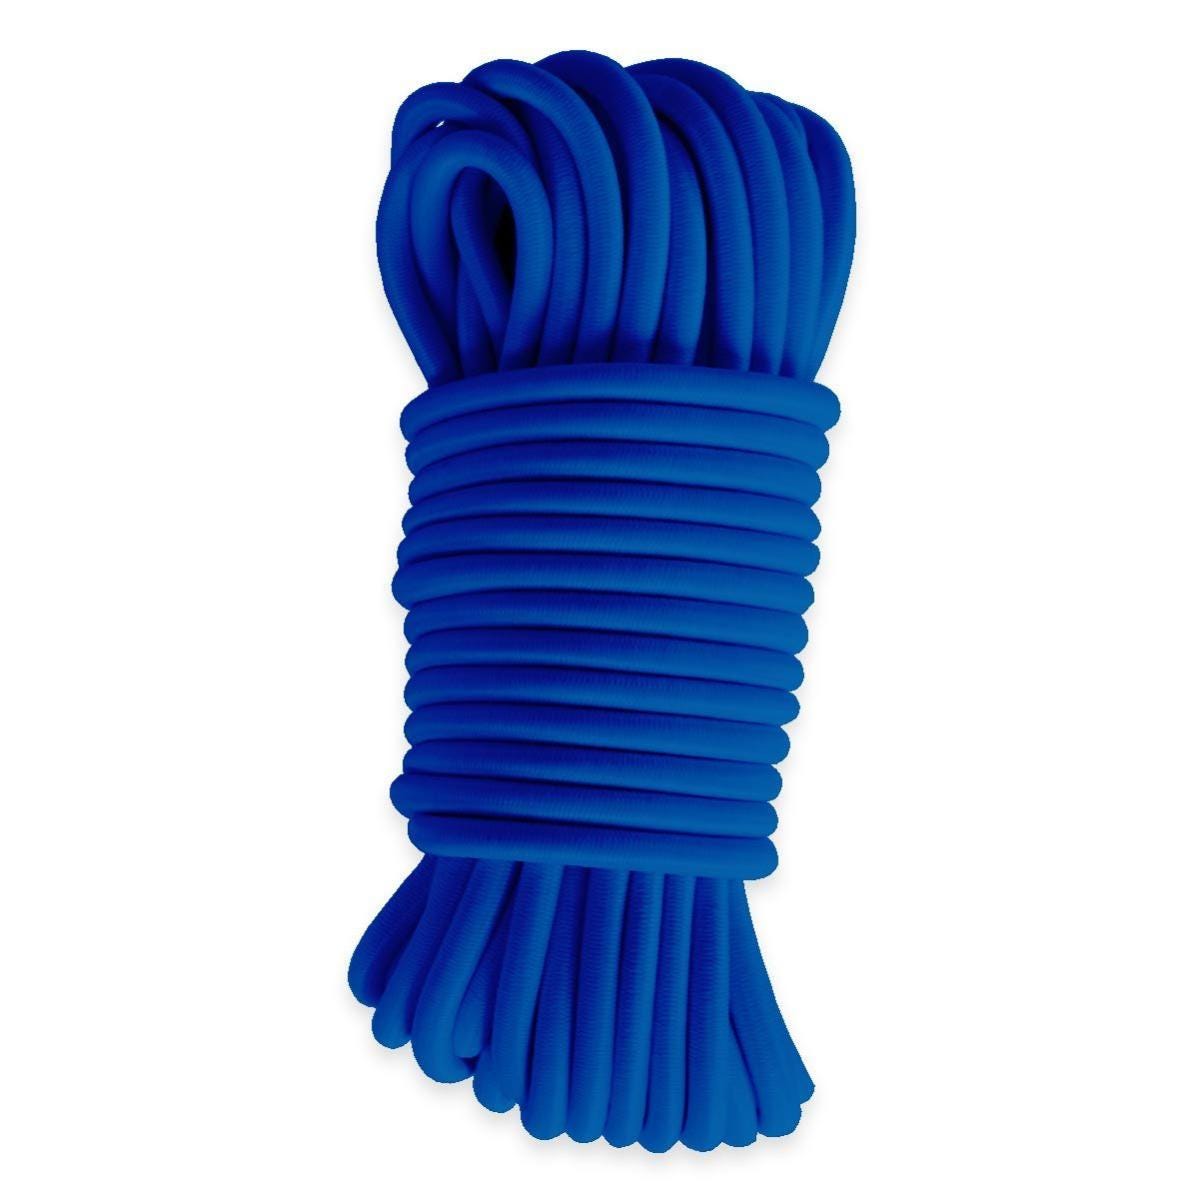 Sandow élastique Bleu 50 mètres - Qualité PRO TECPLAST 9SW - Tendeur pour bâche de diamètre 9 mm 0